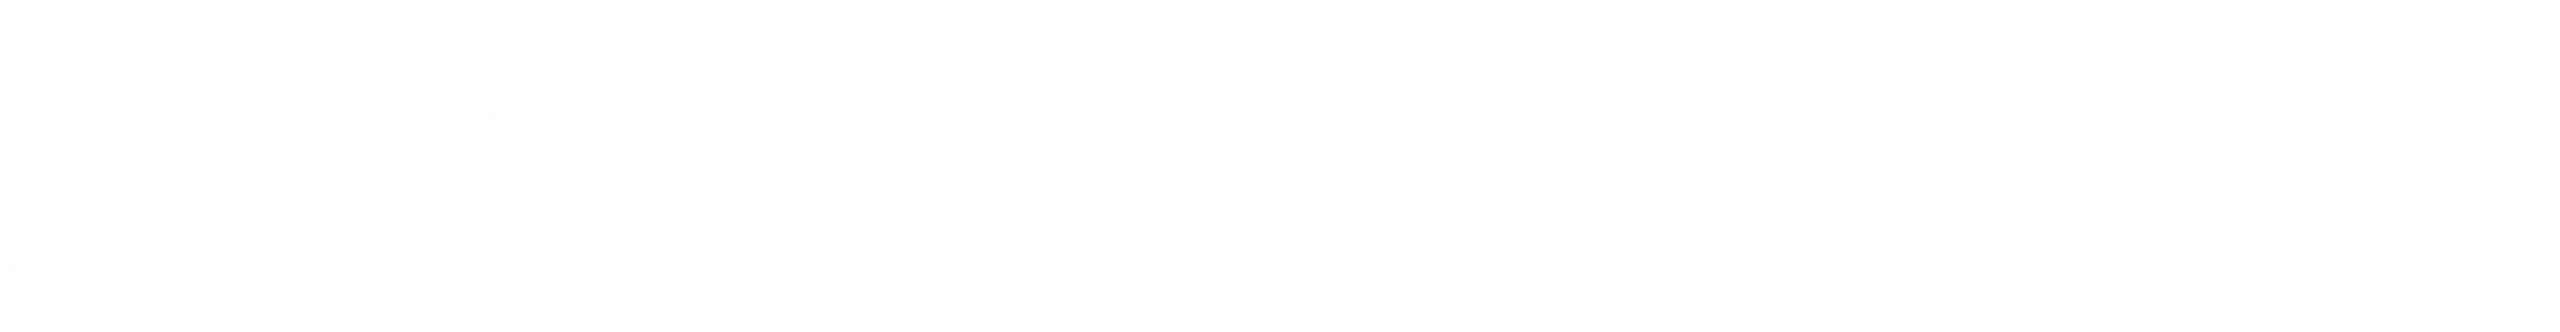 BeGabmbleAware logo